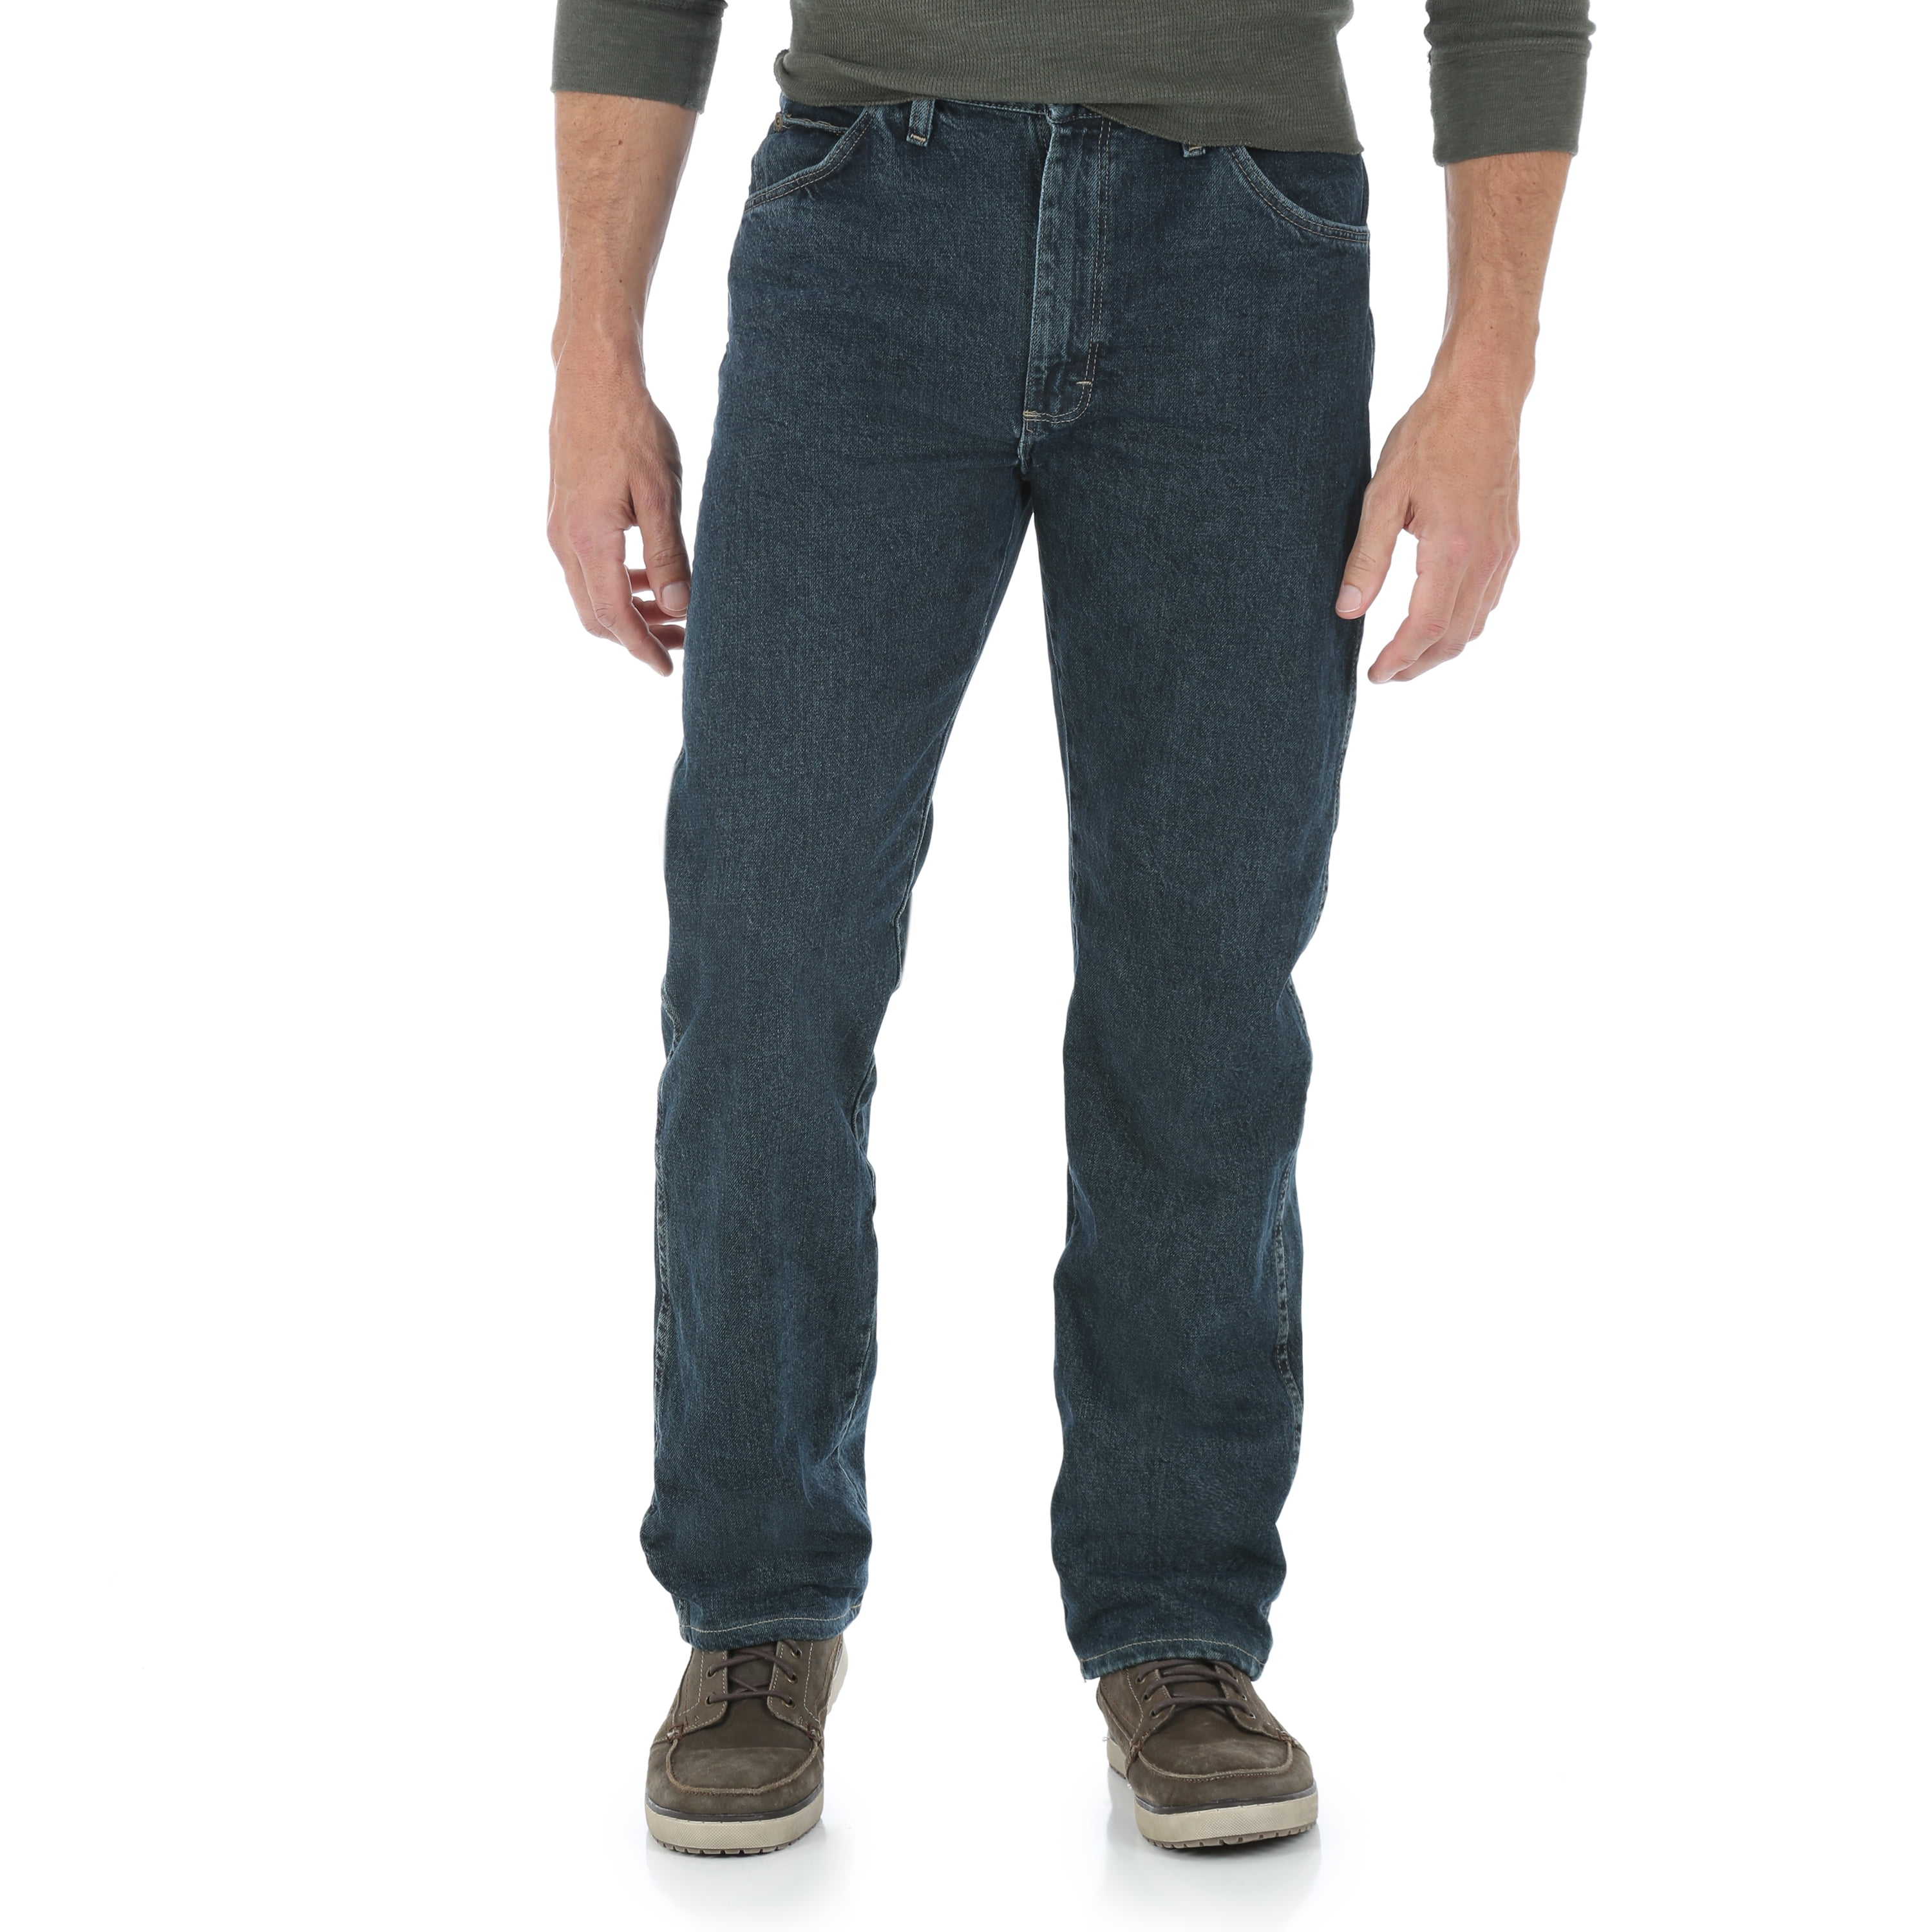 wrangler jeans walmart